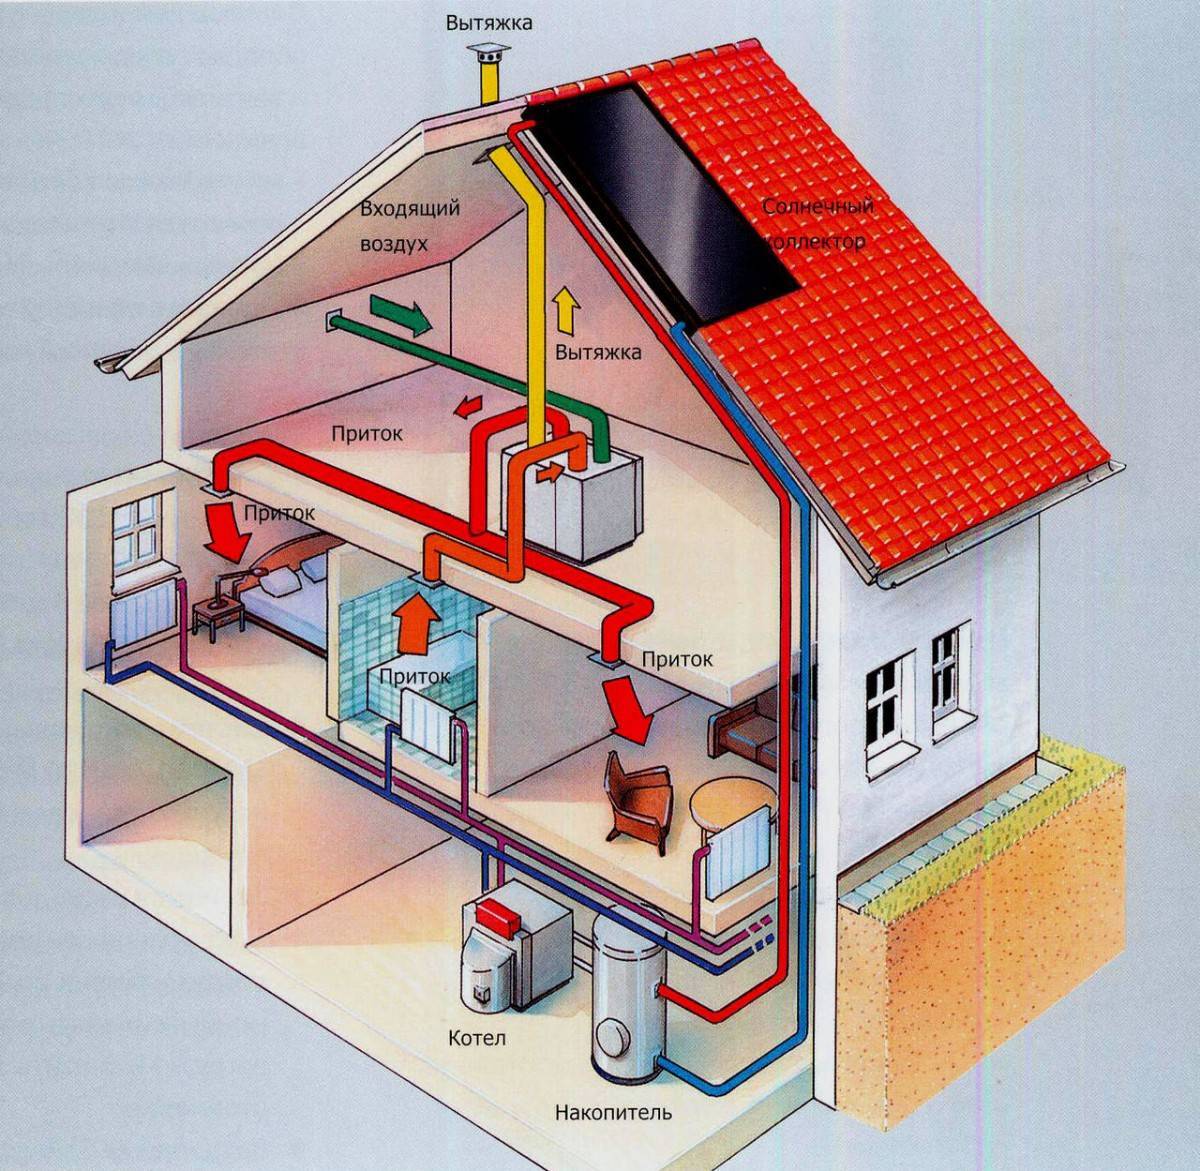 Самое экономичное отопление дома. 3 варианта реализации